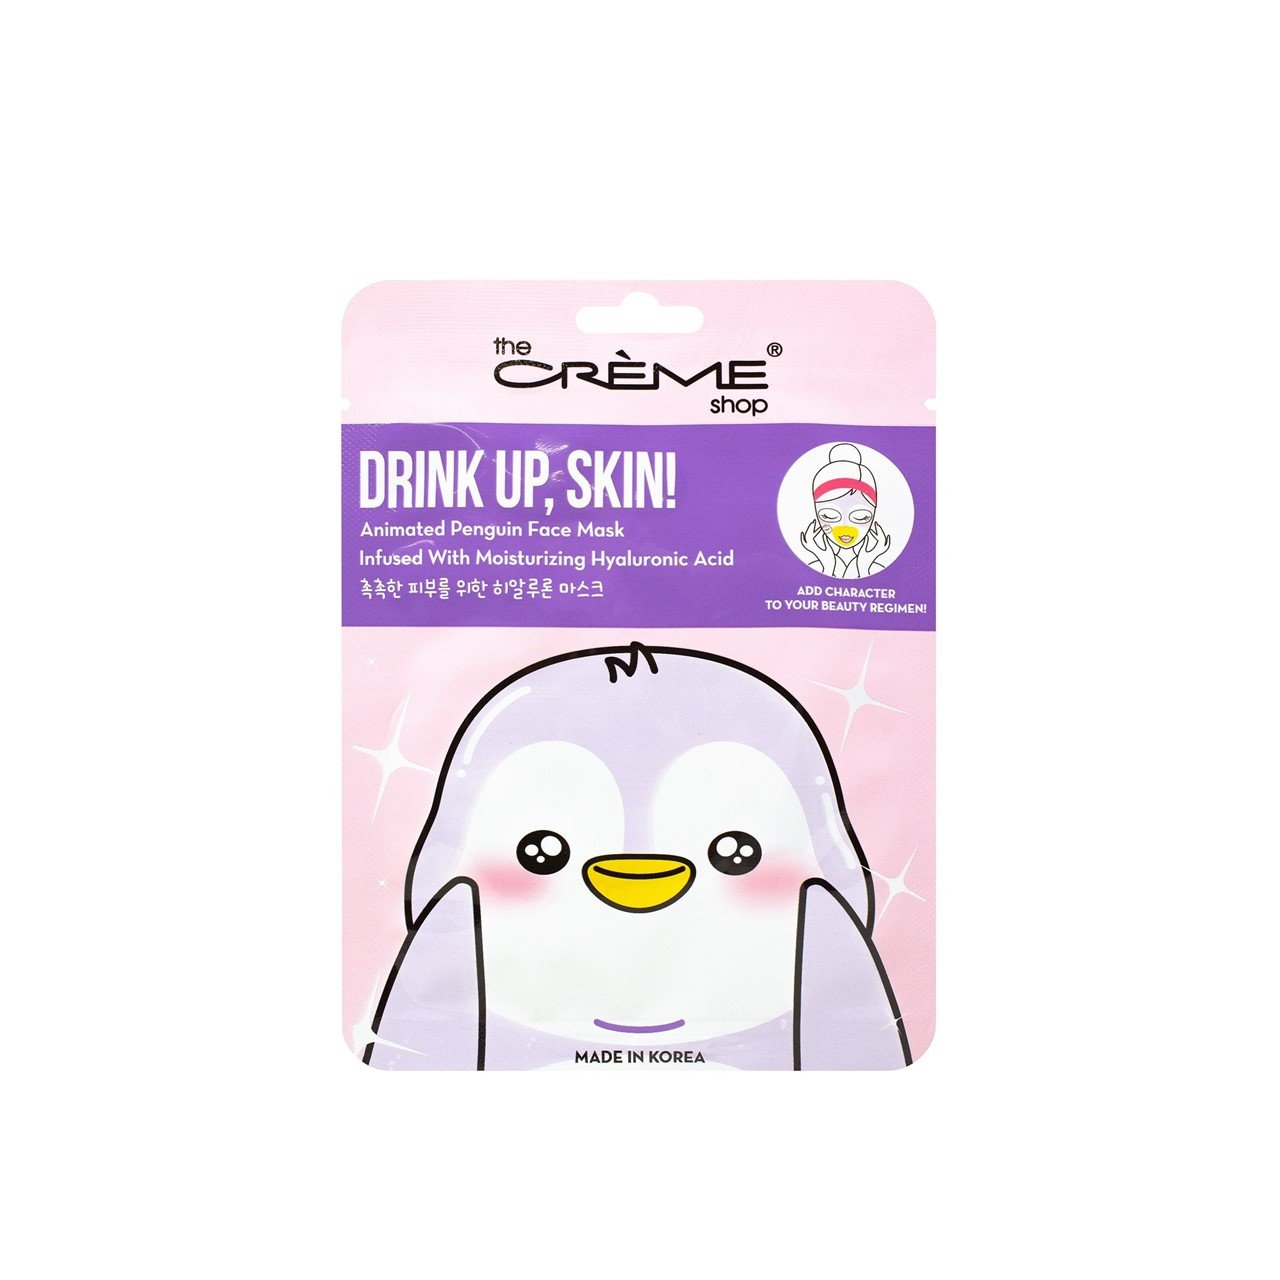 The Crème Shop Drink Up, Skin! Animated Penguin Face Mask 25g (0.88 oz)